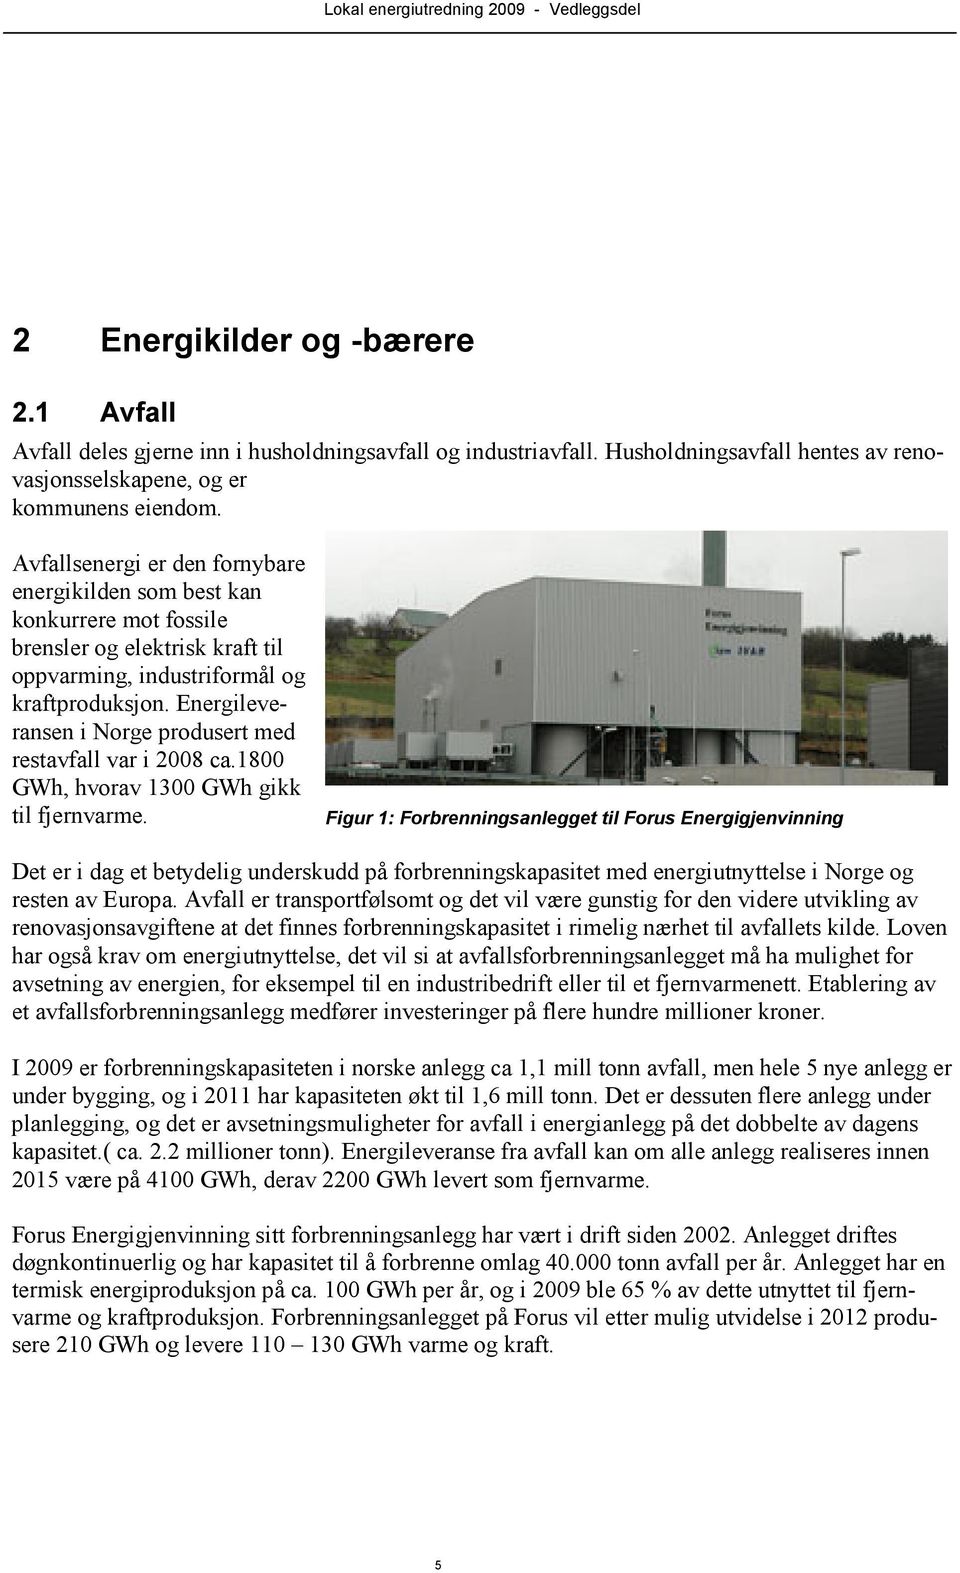 Energileveransen i Norge produsert med restavfall var i 2008 ca.1800 GWh, hvorav 1300 GWh gikk til fjernvarme.